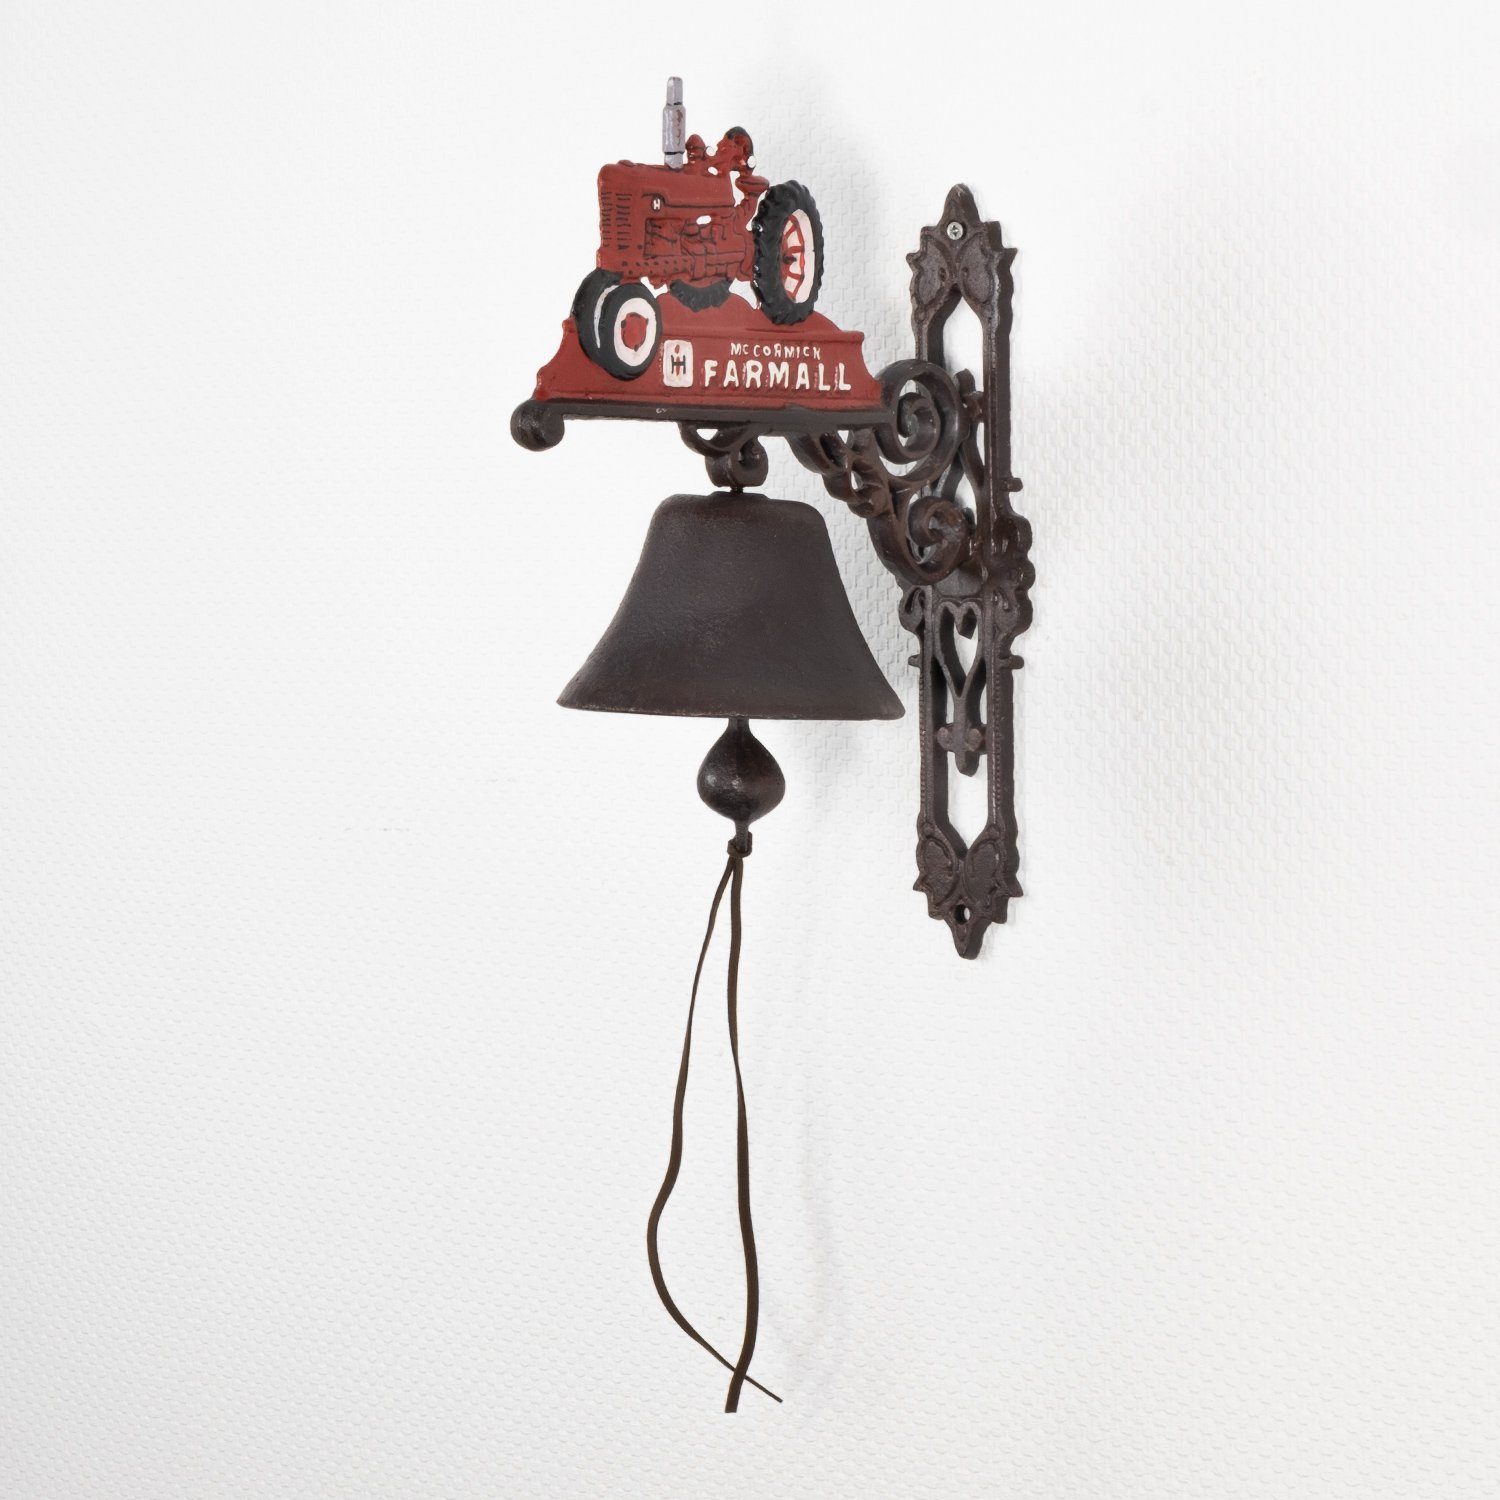 Moritz Gartenfigur Glocke Trecker (Wandglocke), Klingel Antik Stil Türglocke Gong Rot, Landhaus Gusseisen Glocke Wandglocke